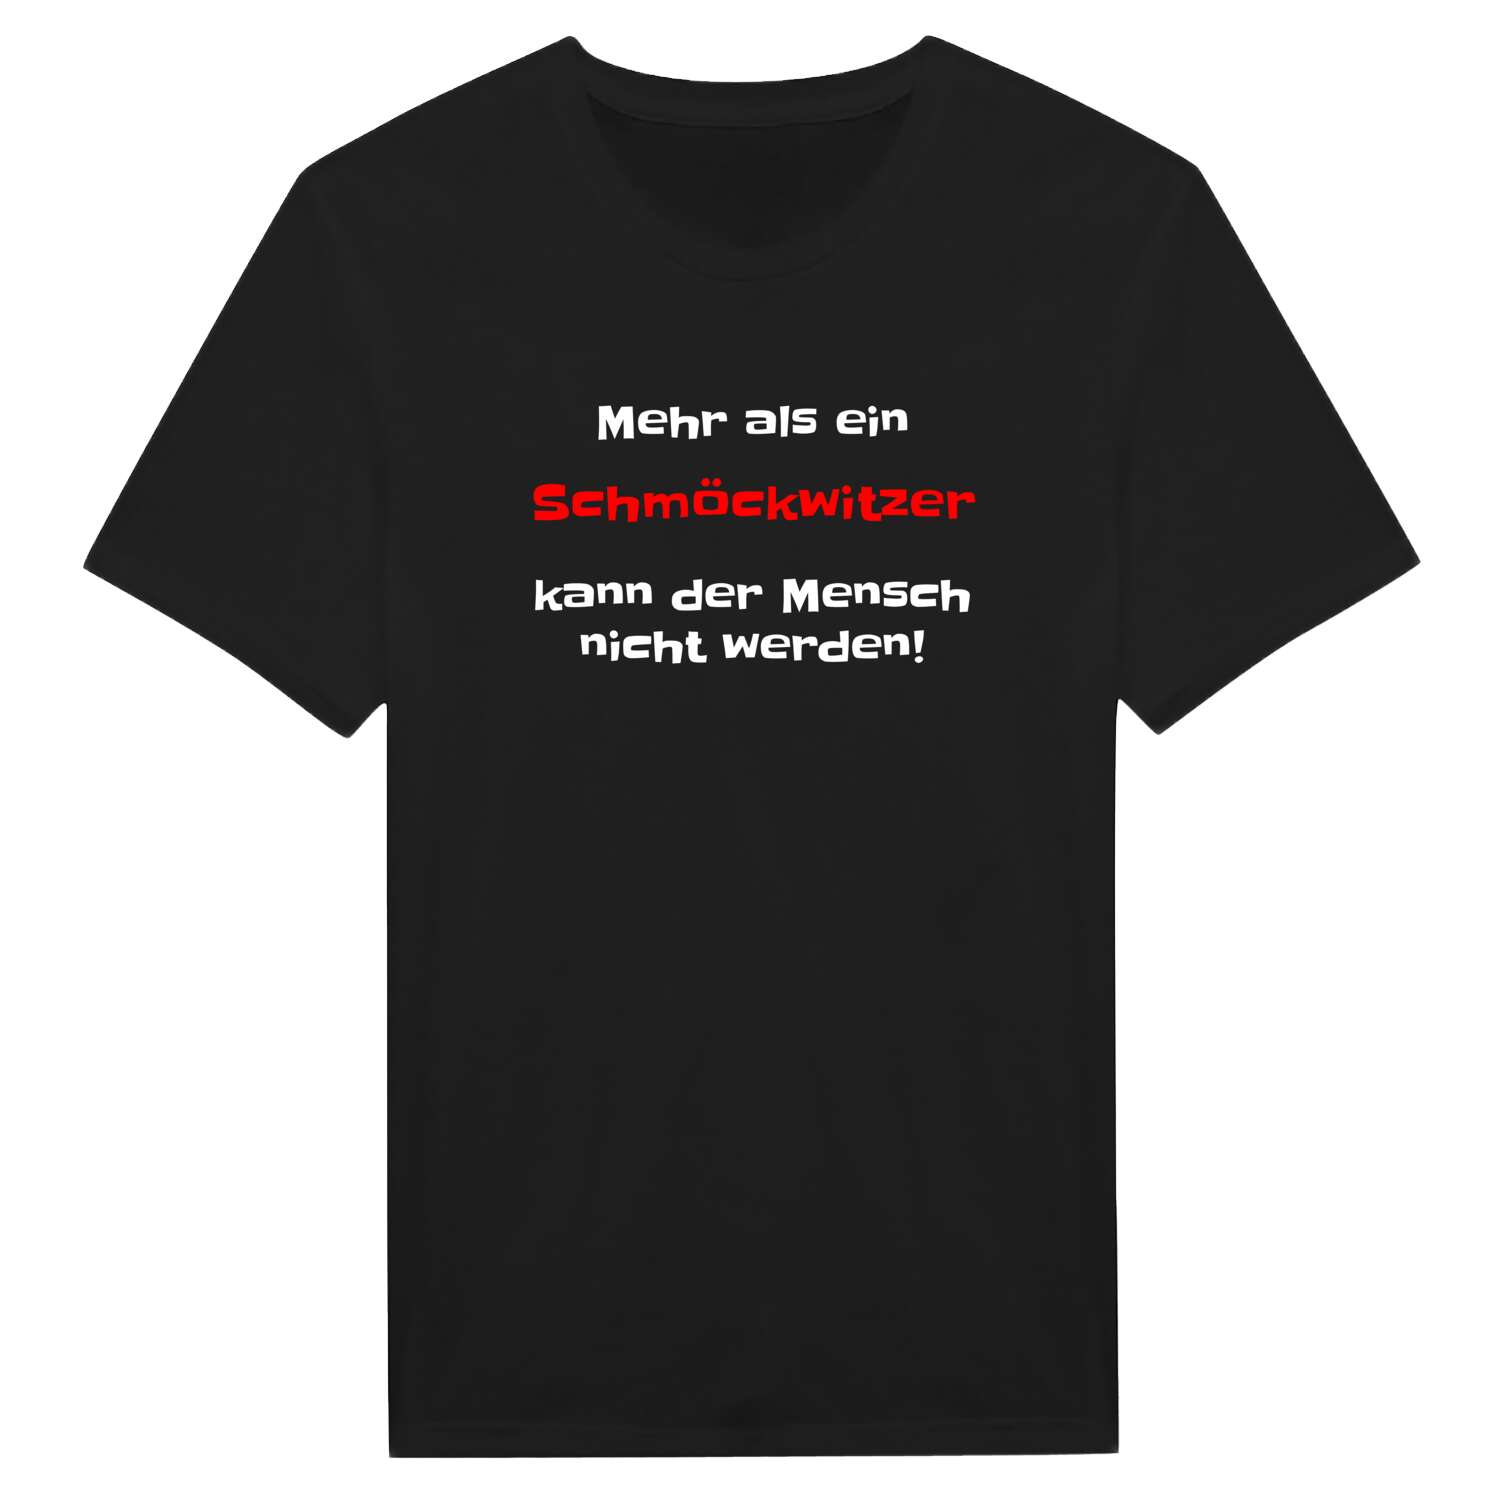 Schmöckwitz T-Shirt »Mehr als ein«